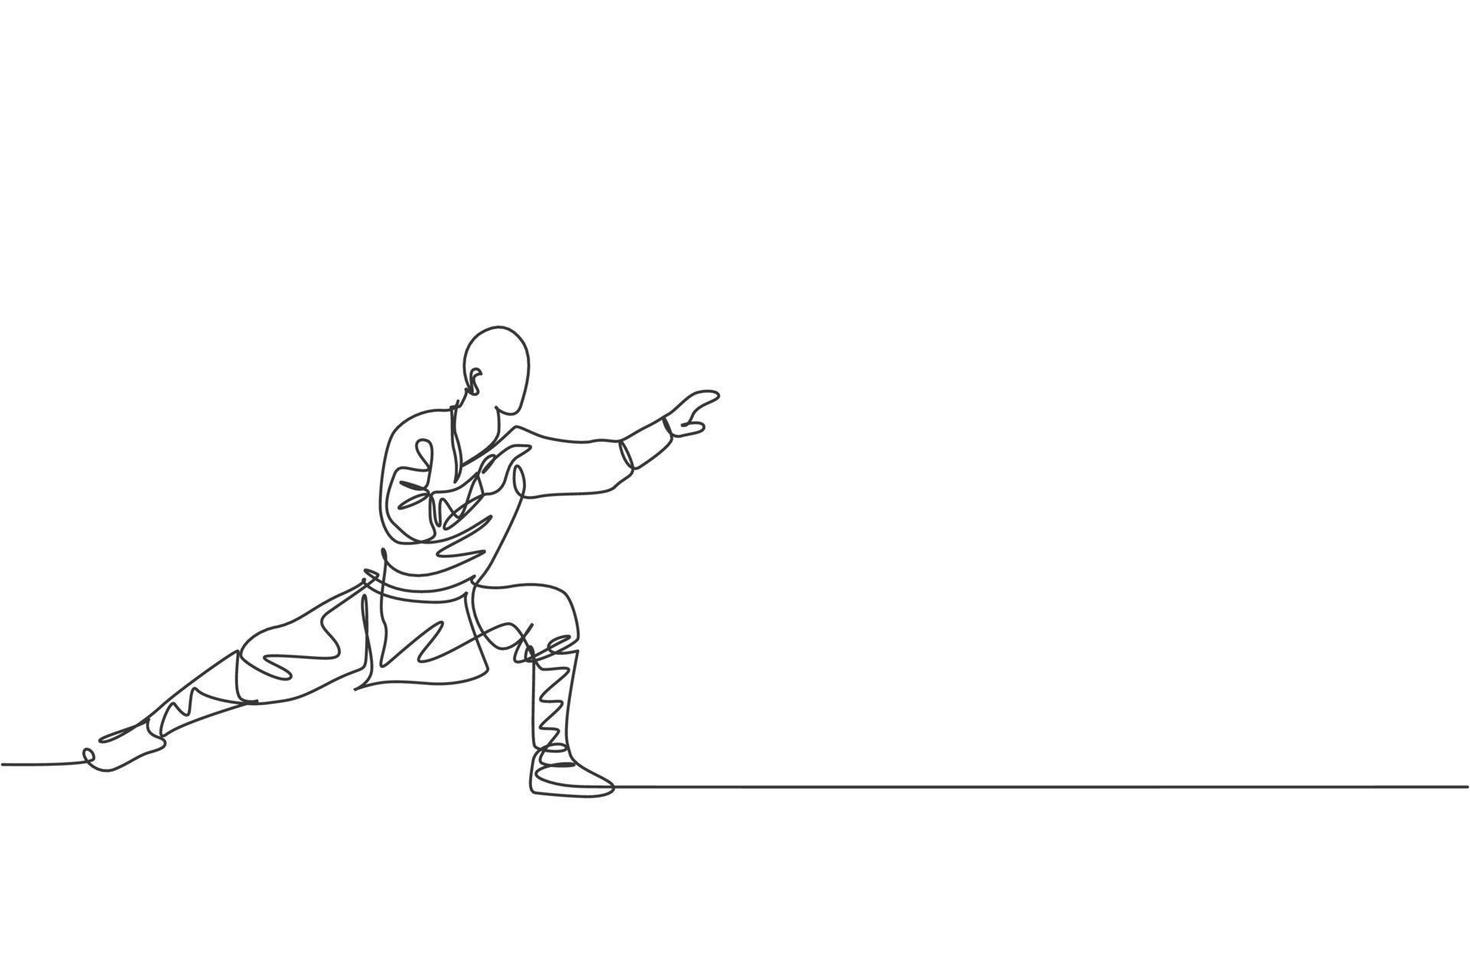 een doorlopende lijntekening van een jonge shaolin-monniksman die kungfu-stijl beoefent op de tempelgrond. traditioneel chinees strijdlustig sportconcept. dynamische enkele lijn tekenen ontwerp grafische vectorillustratie vector